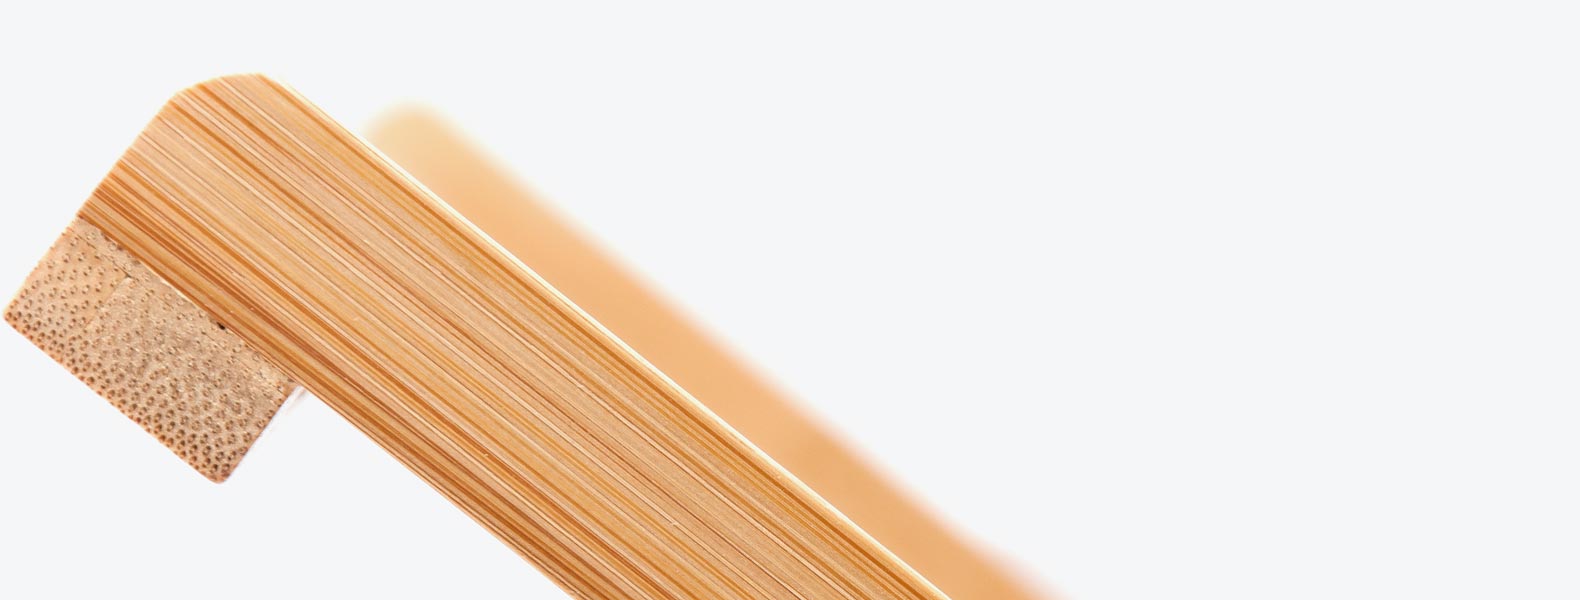 Confeccionado em bambu, possui design moderno e capacidade para até 18 pratos grandes. É leve e resistente, e conta ainda com sistema dobrável de fácil manuseio. Produto ecológico e ideal para empresas ou ações que buscam transmitir mensagens relacionadas à sustentabilidade.